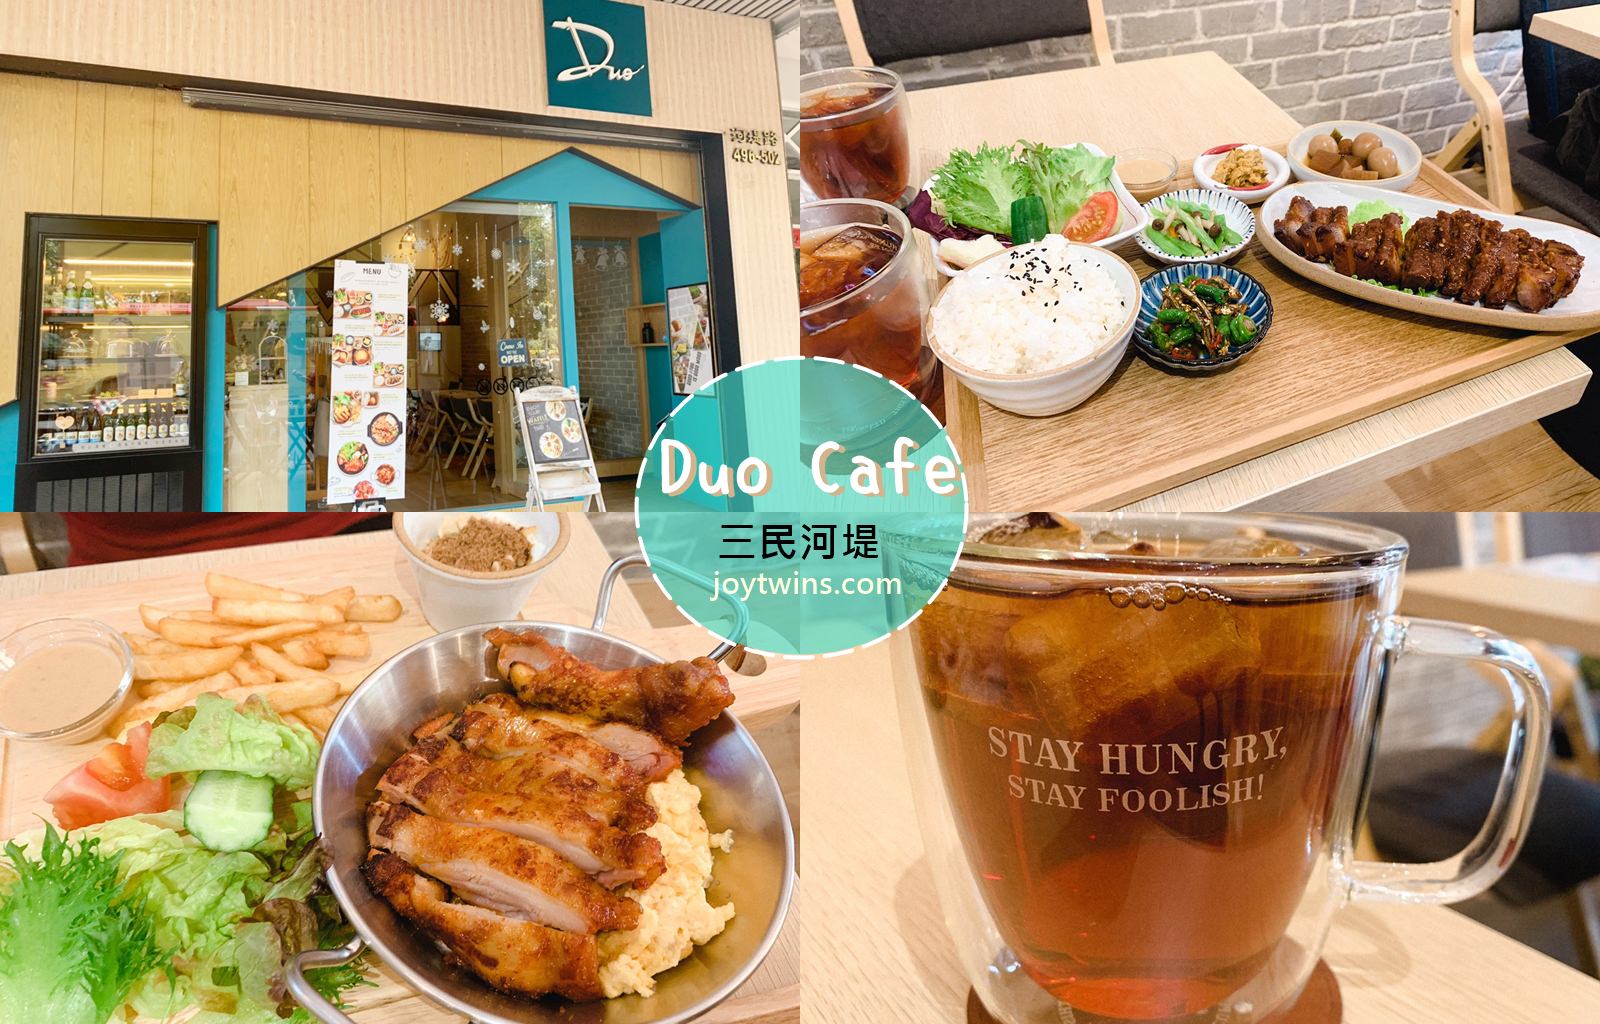 高雄美食 三民 河堤 Duo Cafe 韓式咖啡館 讓人吃驚的豪華份量餐點 時髦聚會場所